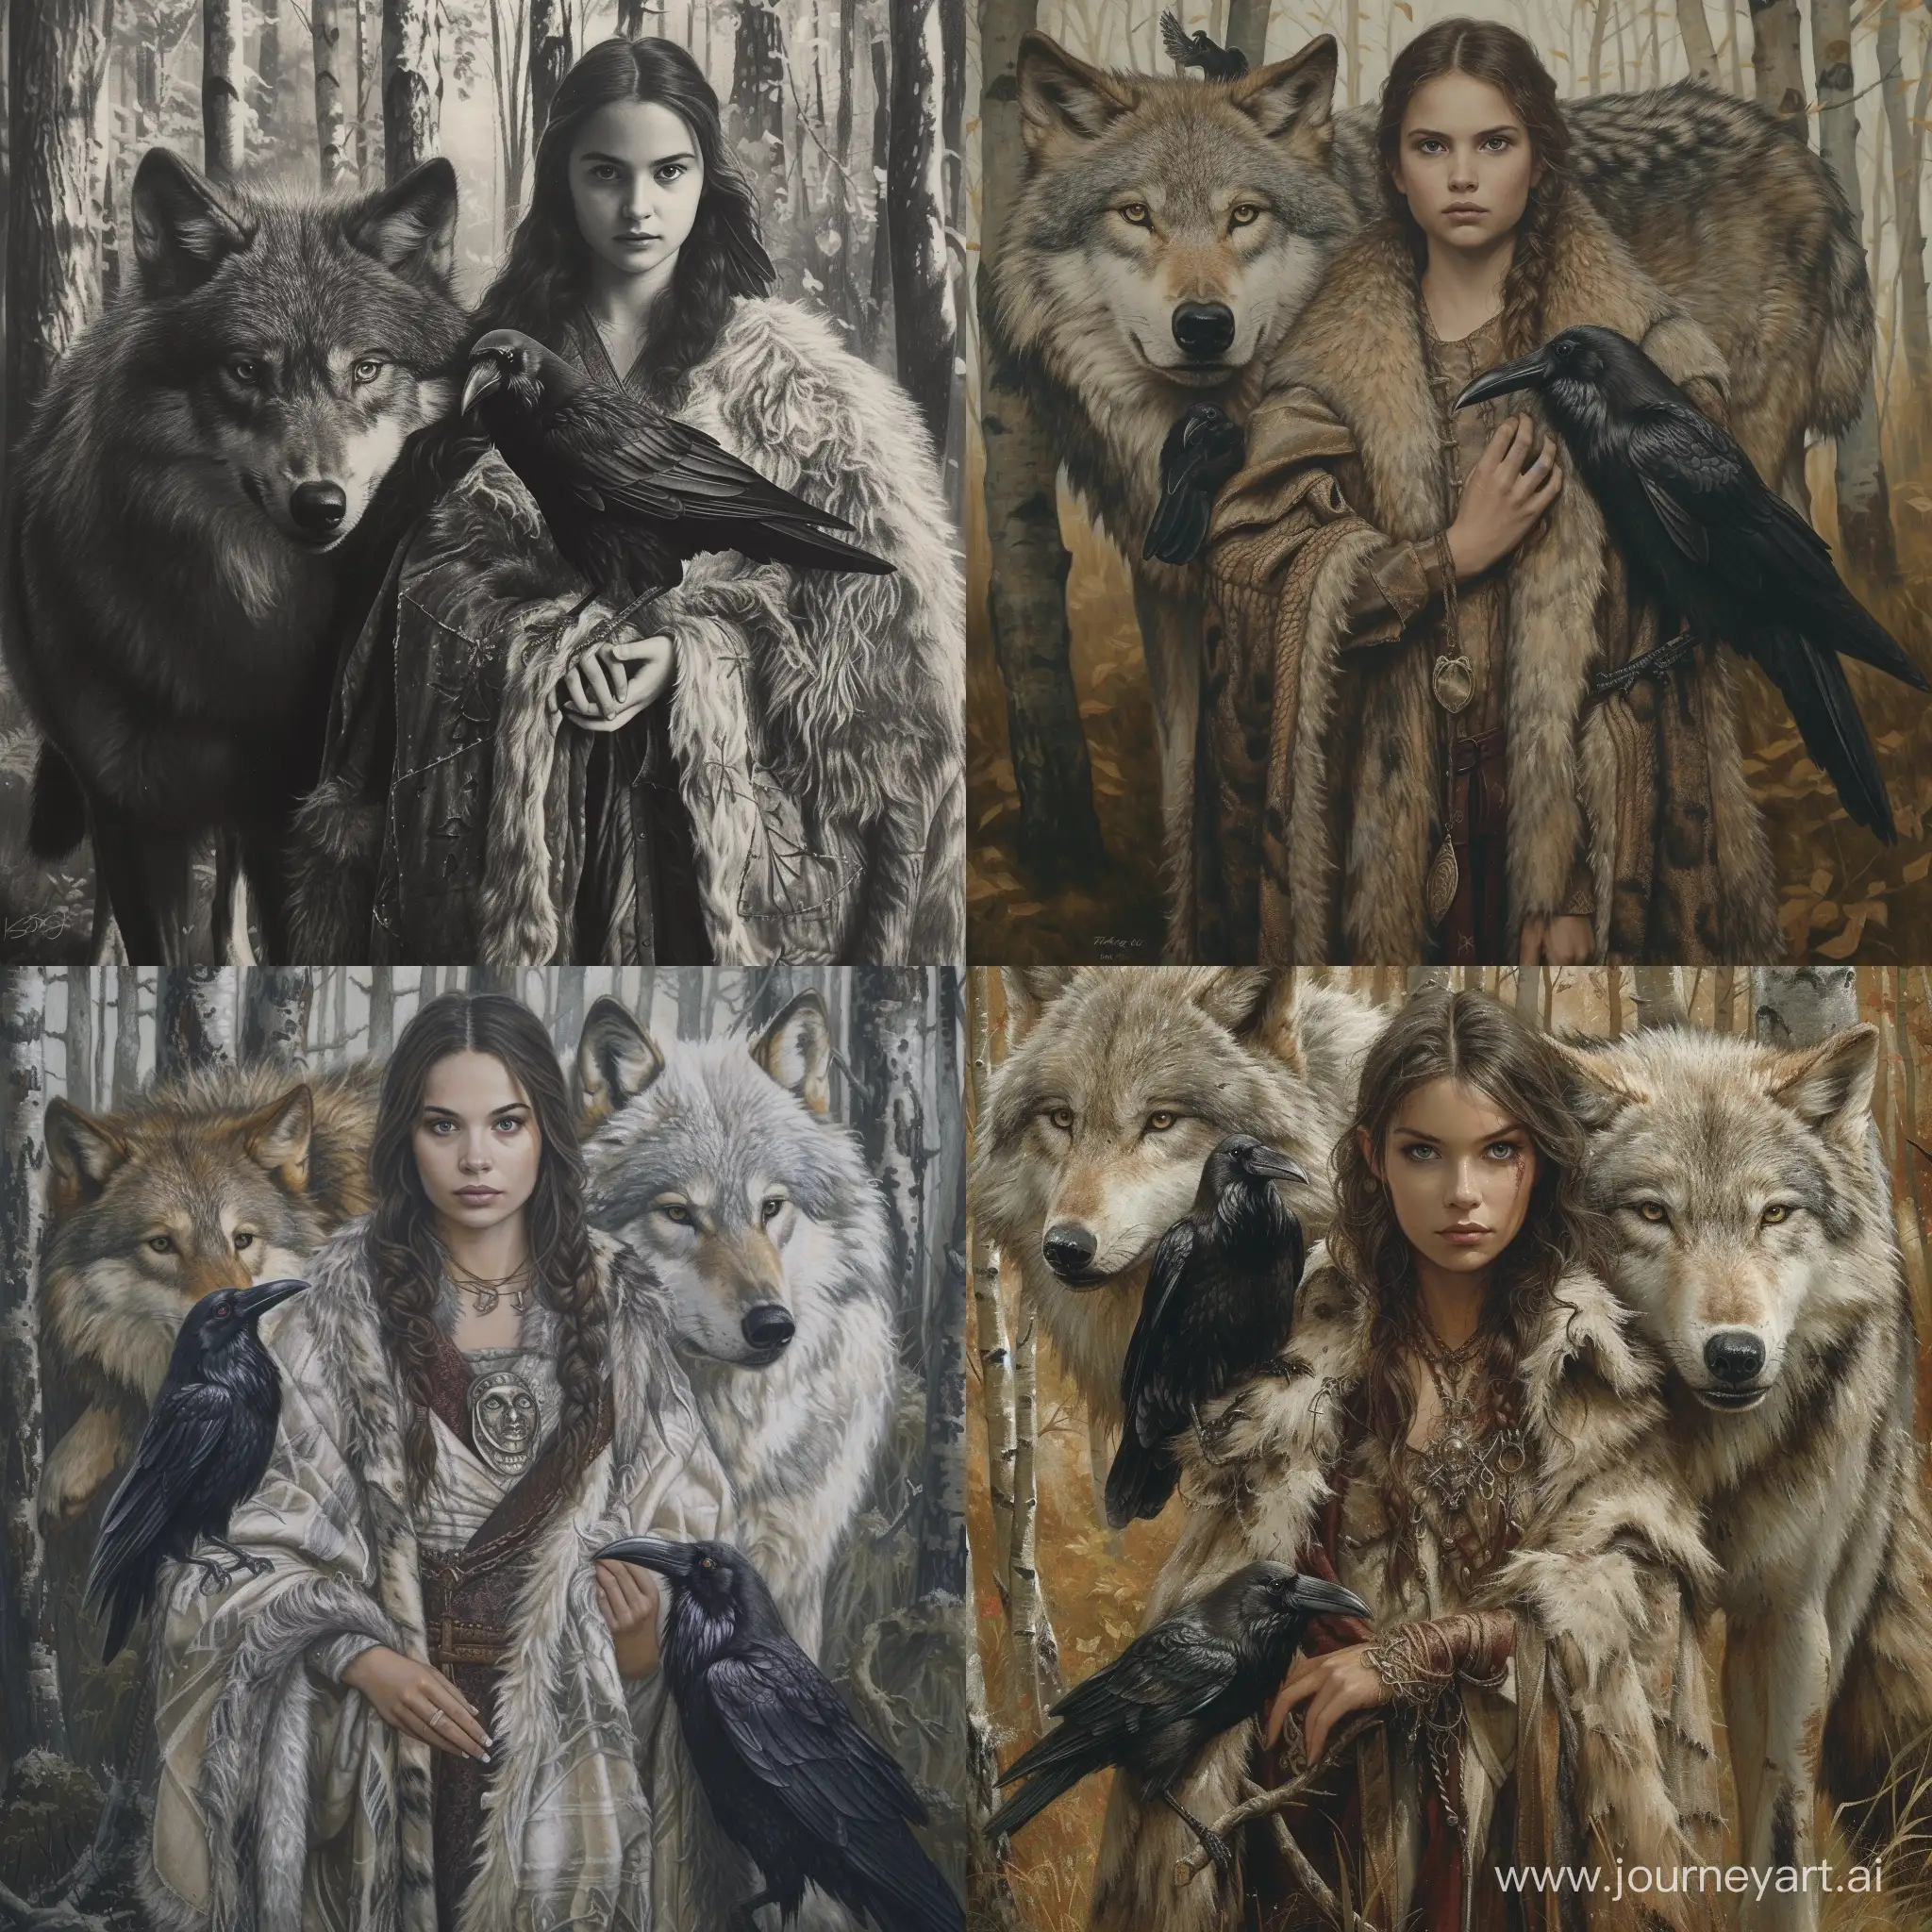 портрет Фэнтези Девушка в образе колдуньи в лесу с волком и вороном в балахоне с мехом.  Ворон на левой руке. Вторая рука на волке, запущенная неглубоко в шерсть.